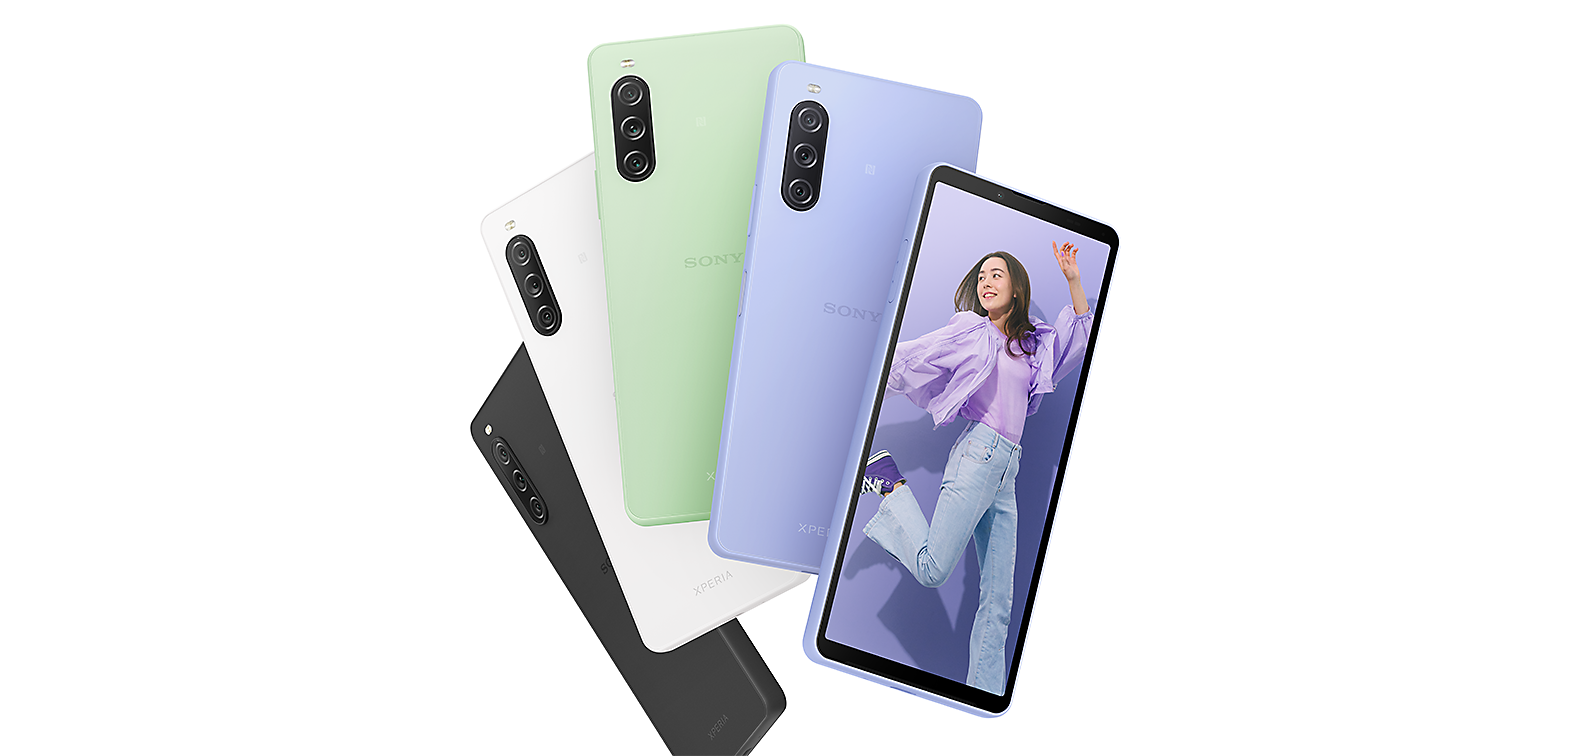 Smartphony Xperia 10 V v černém, bílém, šedozeleném, zeleném a fialovém provedení zády a jeden telefon Xperia 10 V ve fialovém provedení zobrazující snímek mladé ženy